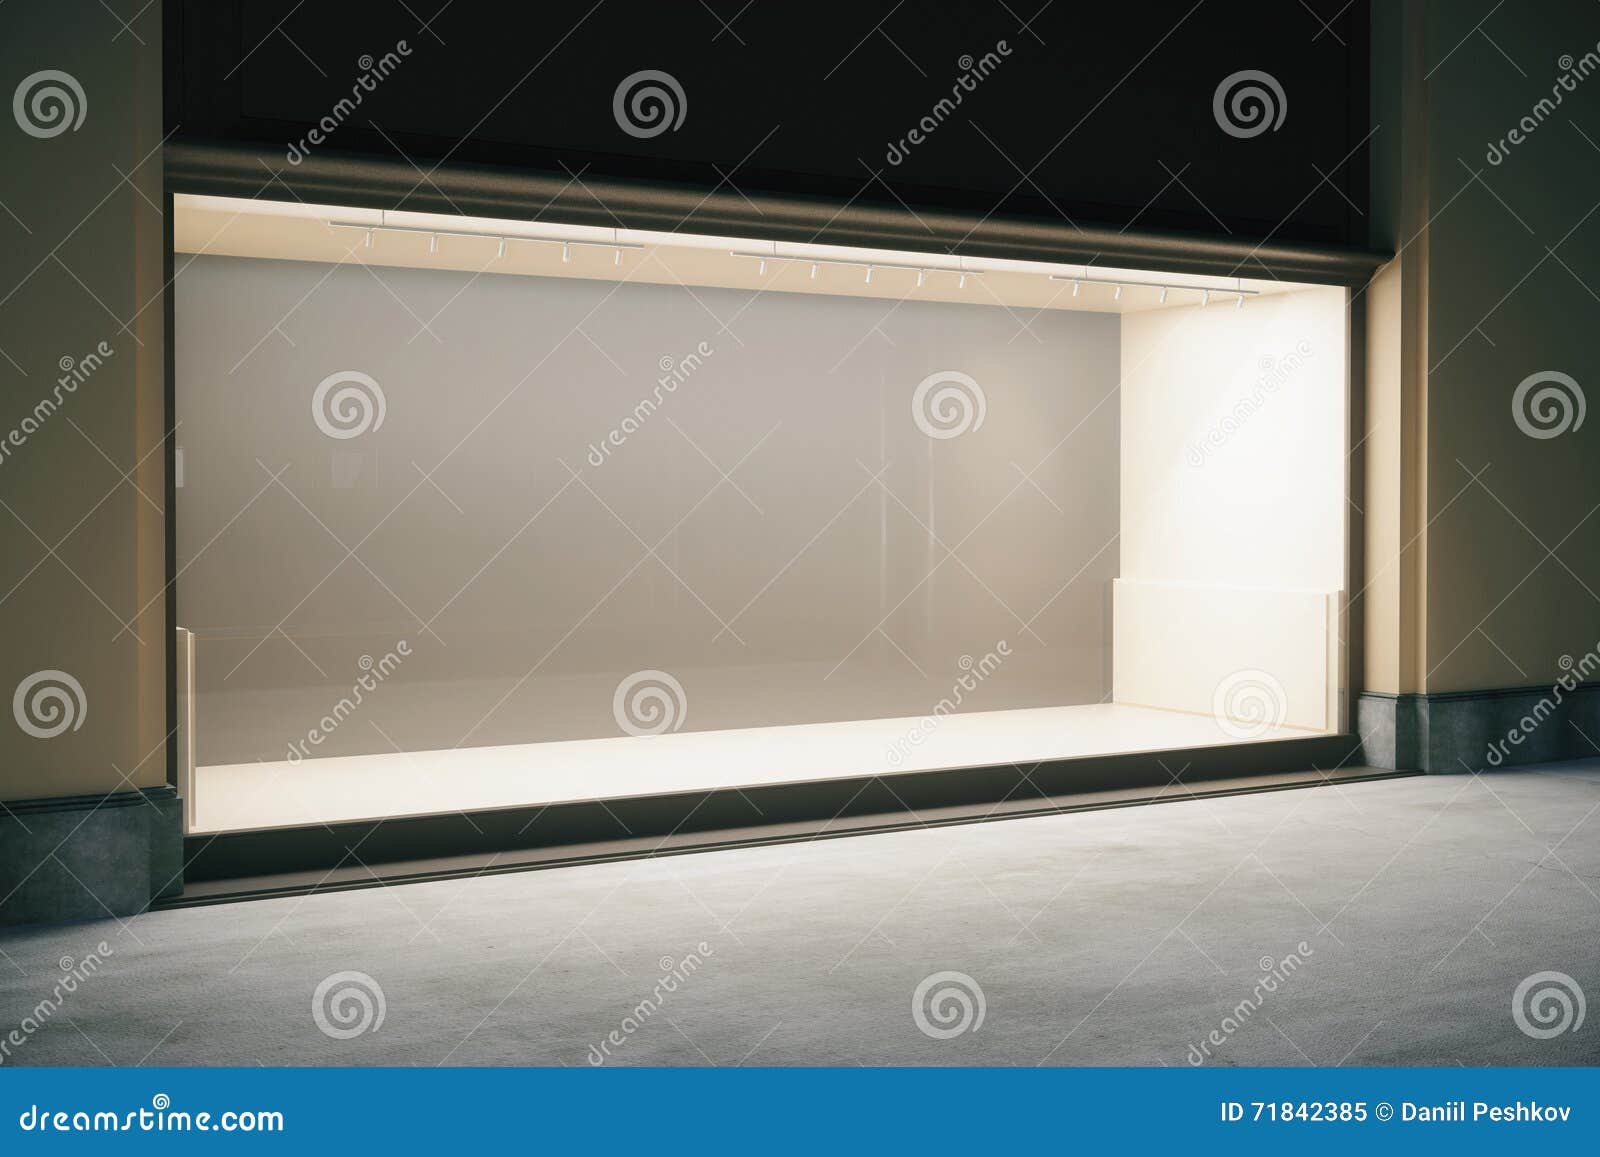 Пустая витрина. Пустая витрина магазина. Витрина магазина пустая с улицы. Пустая витрина магазина для фотошопа. Окно витрины пустое.